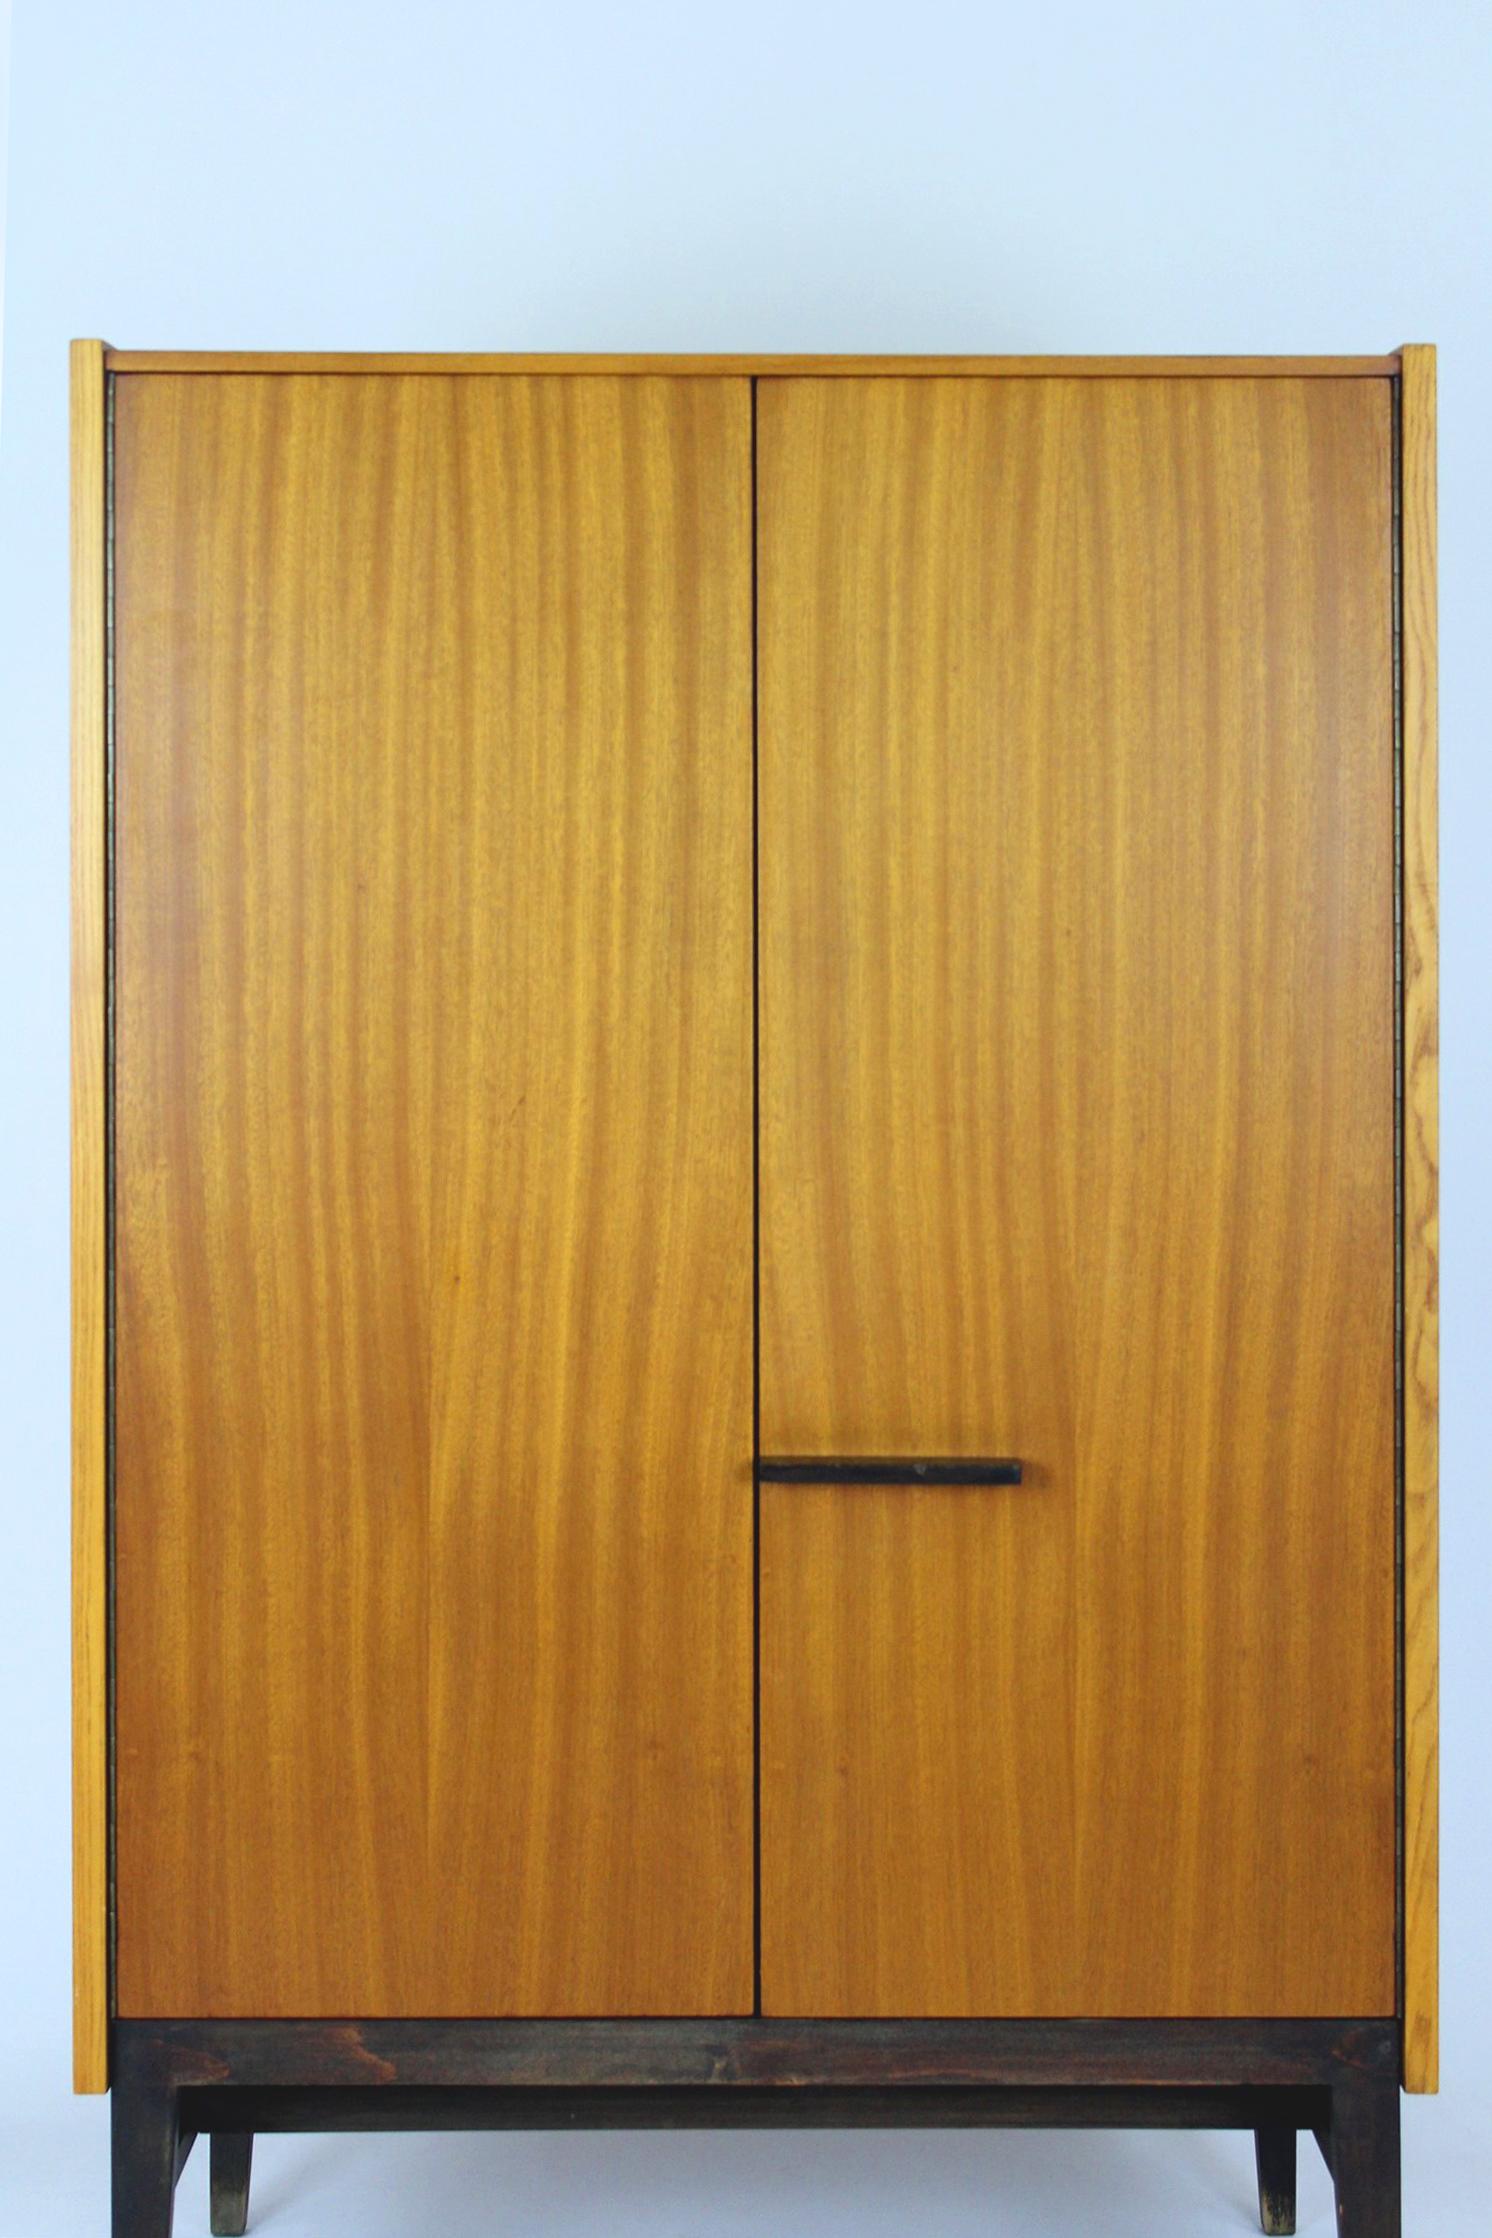 Cette armoire en frêne et acajou a été fabriquée en 1970 par Up&Up en Tchécoslovaquie. Il comporte 4 étagères et 2 tiroirs. L'armoire est conservée dans son état d'origine, en très bon état.
Nous avons d'autres meubles de cet ensemble (bureau, 2